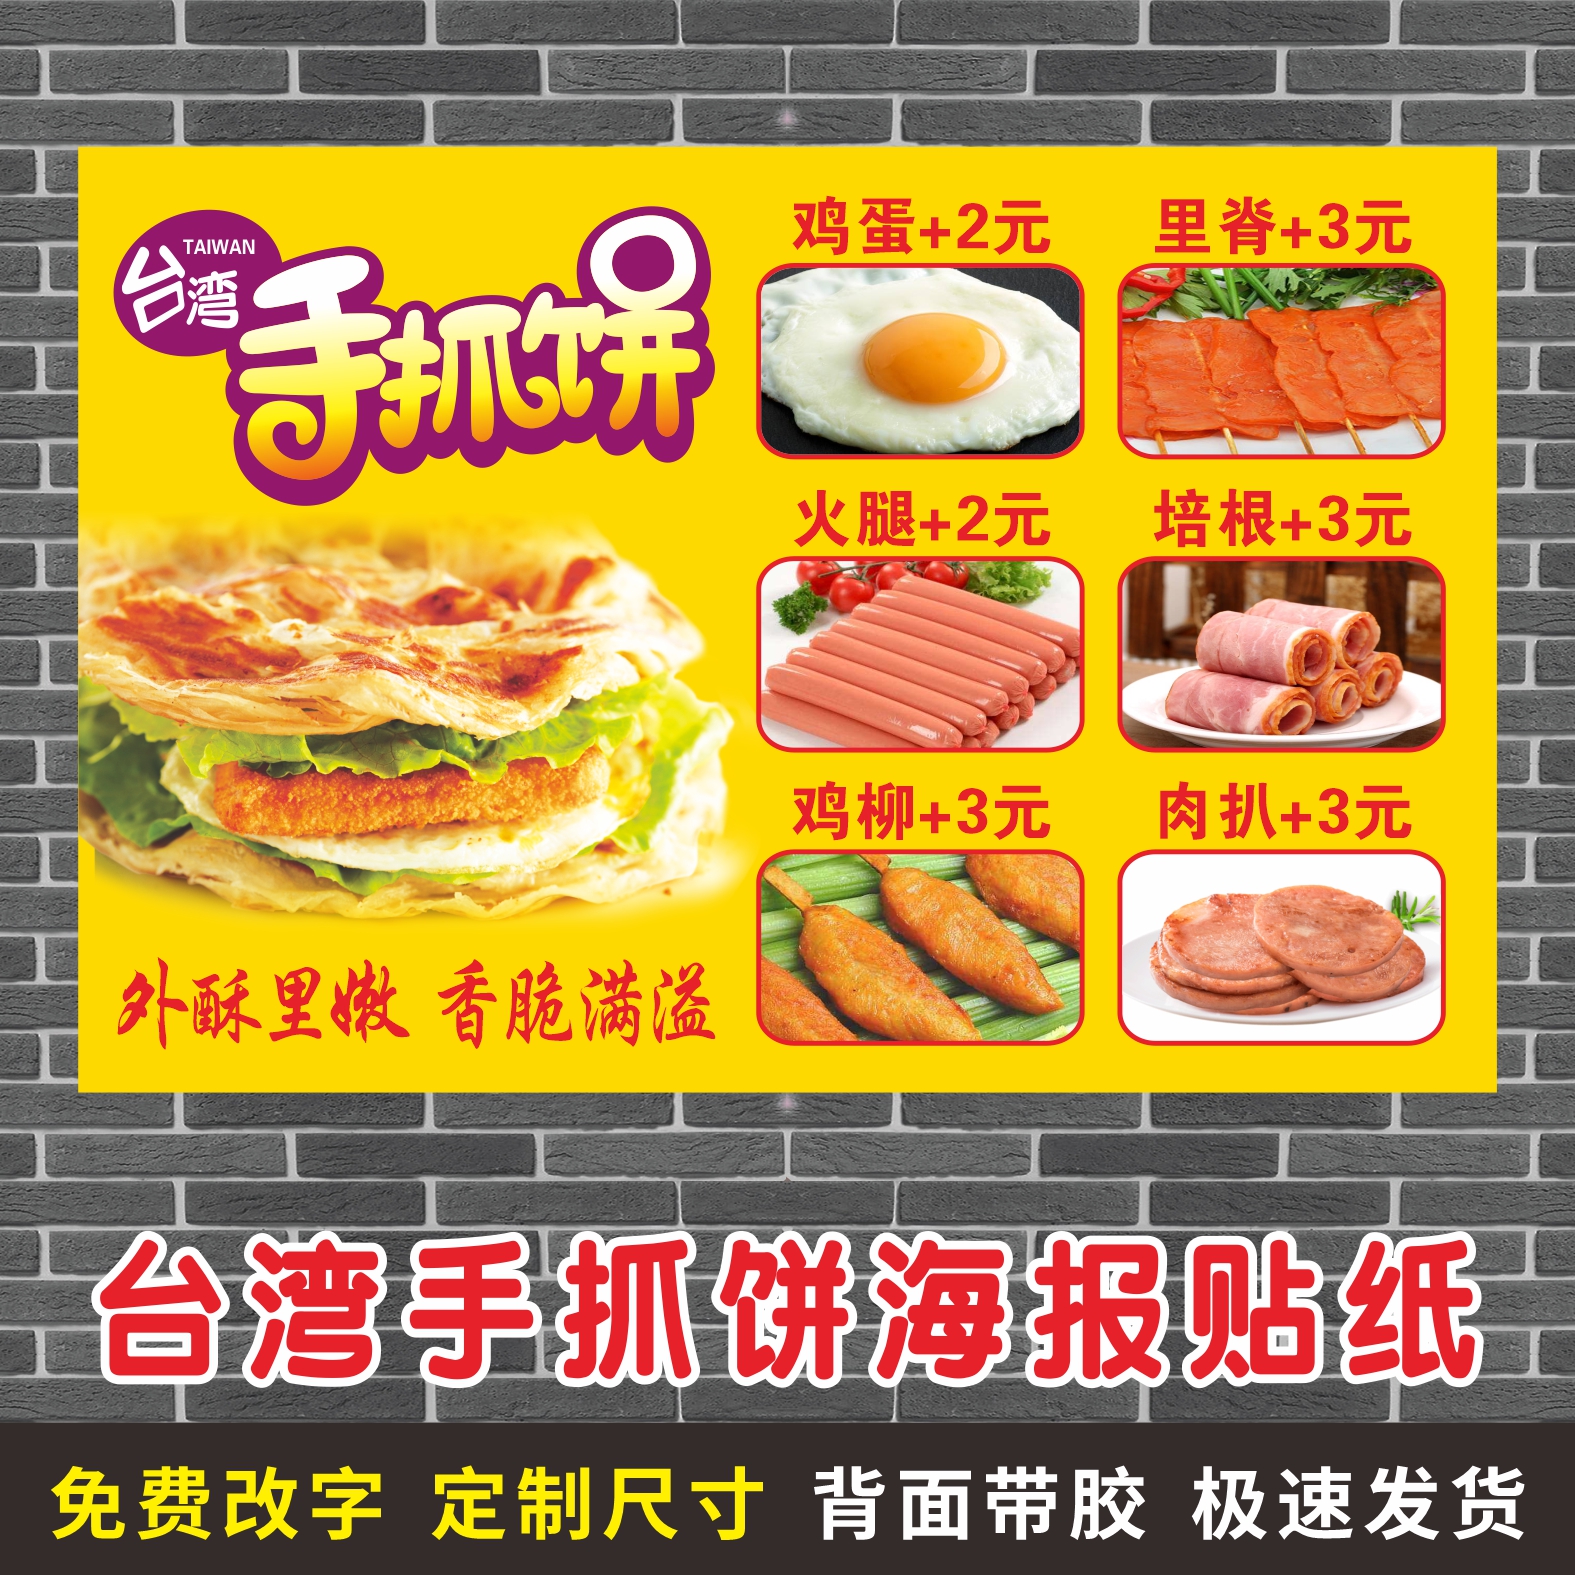 台湾手抓饼价格表海报定制宣传装饰贴画推车美食小吃广告贴纸自粘